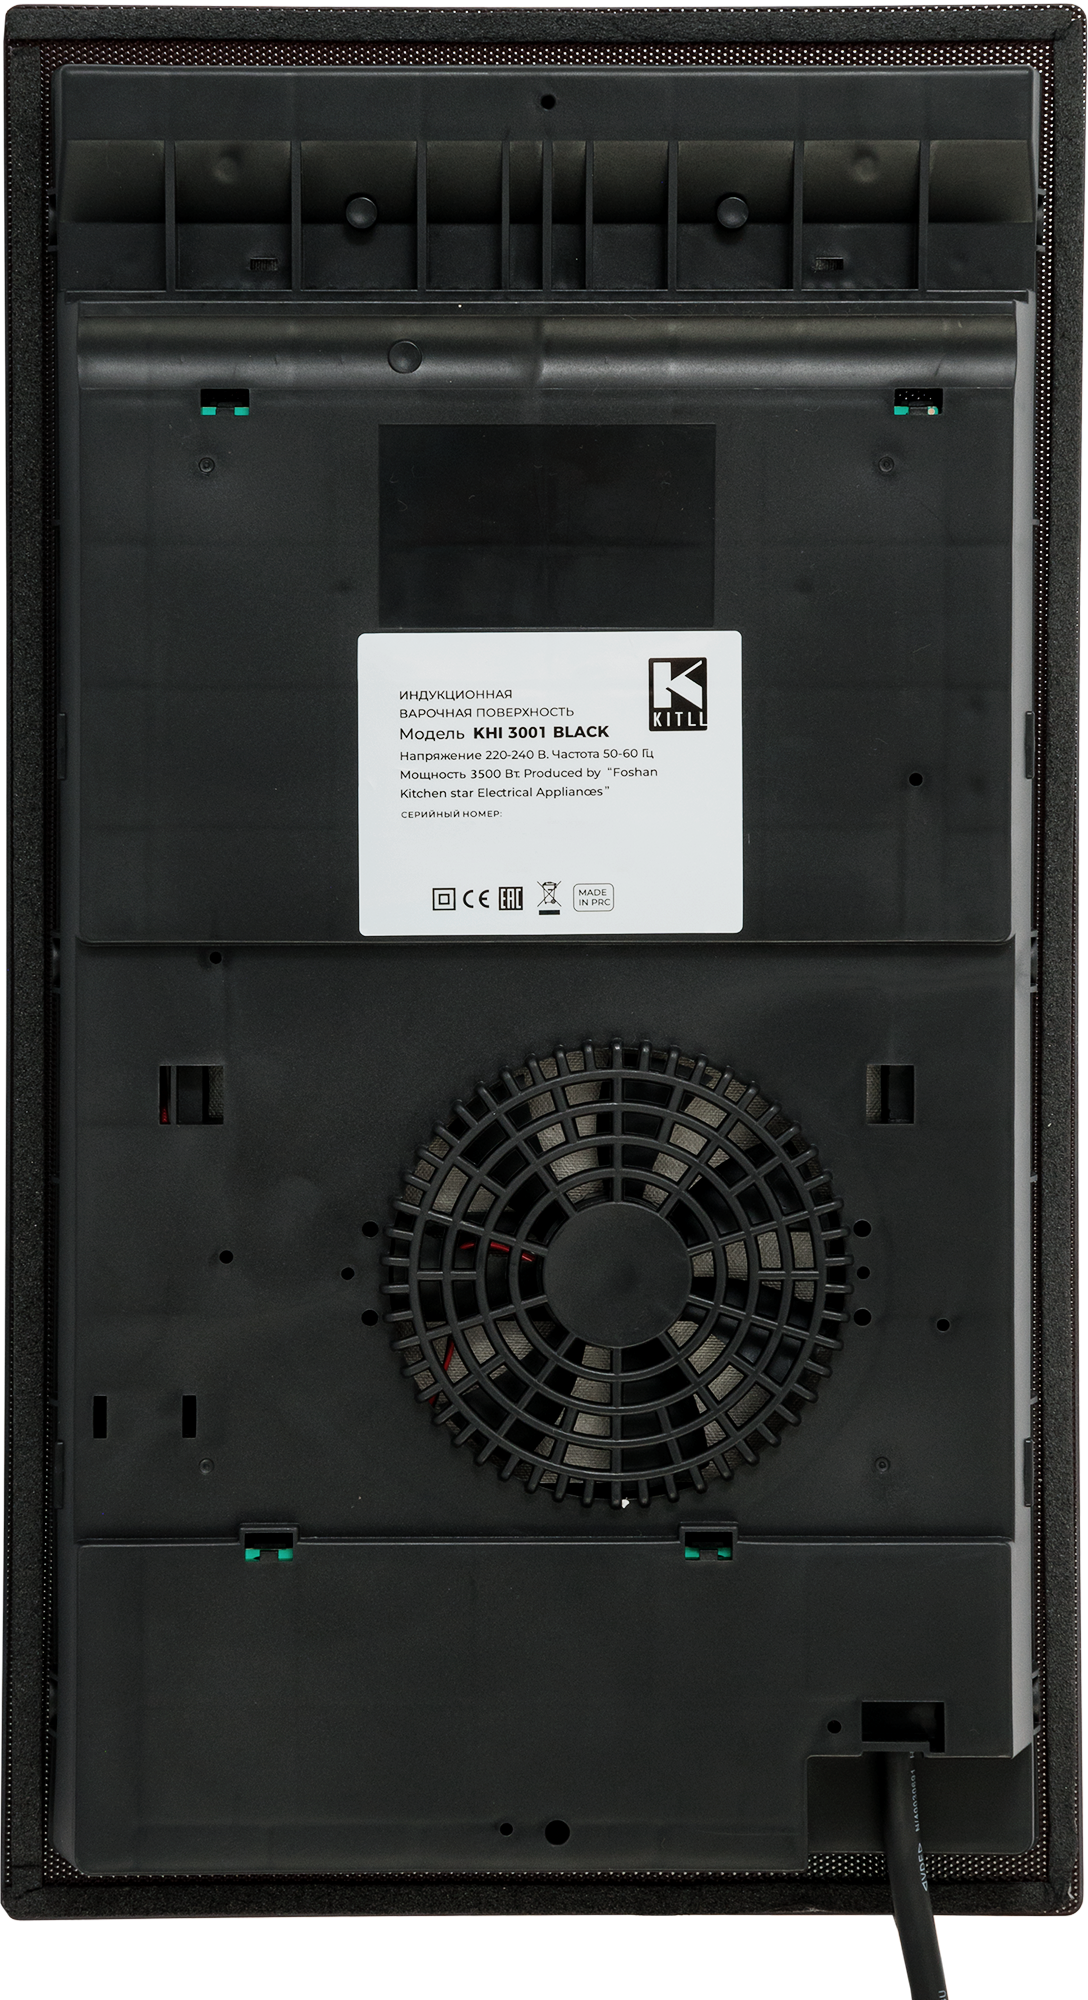 Варочная панель индукционная Kitll KHI 3001 BLACK 2 конфорки 30x52 см цвет чёрный - фотография № 6